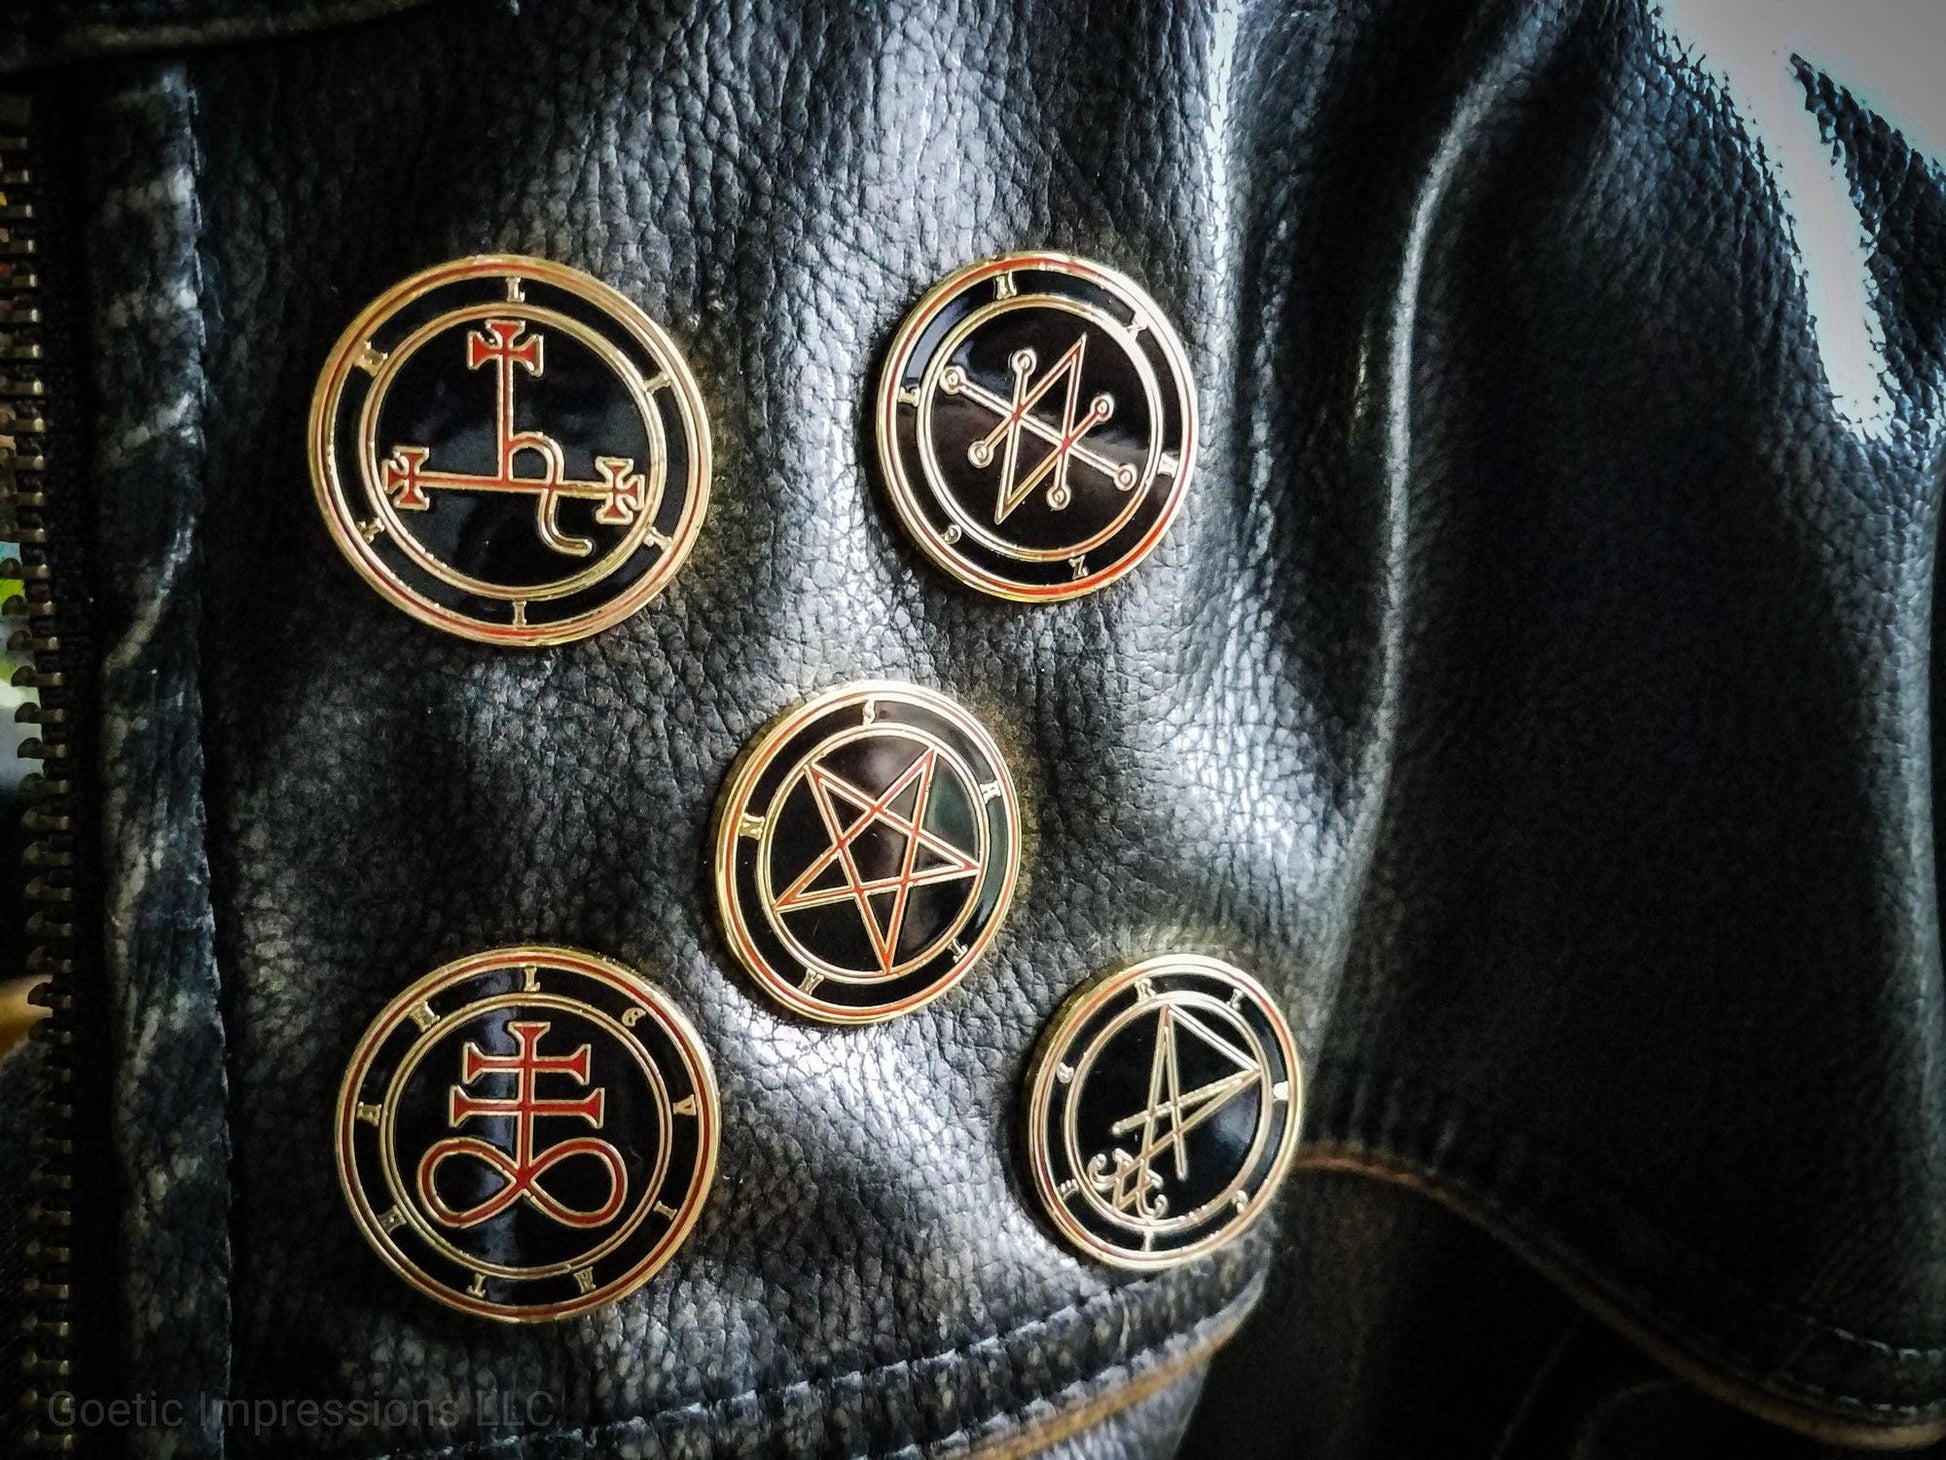 Satanic sigil pins